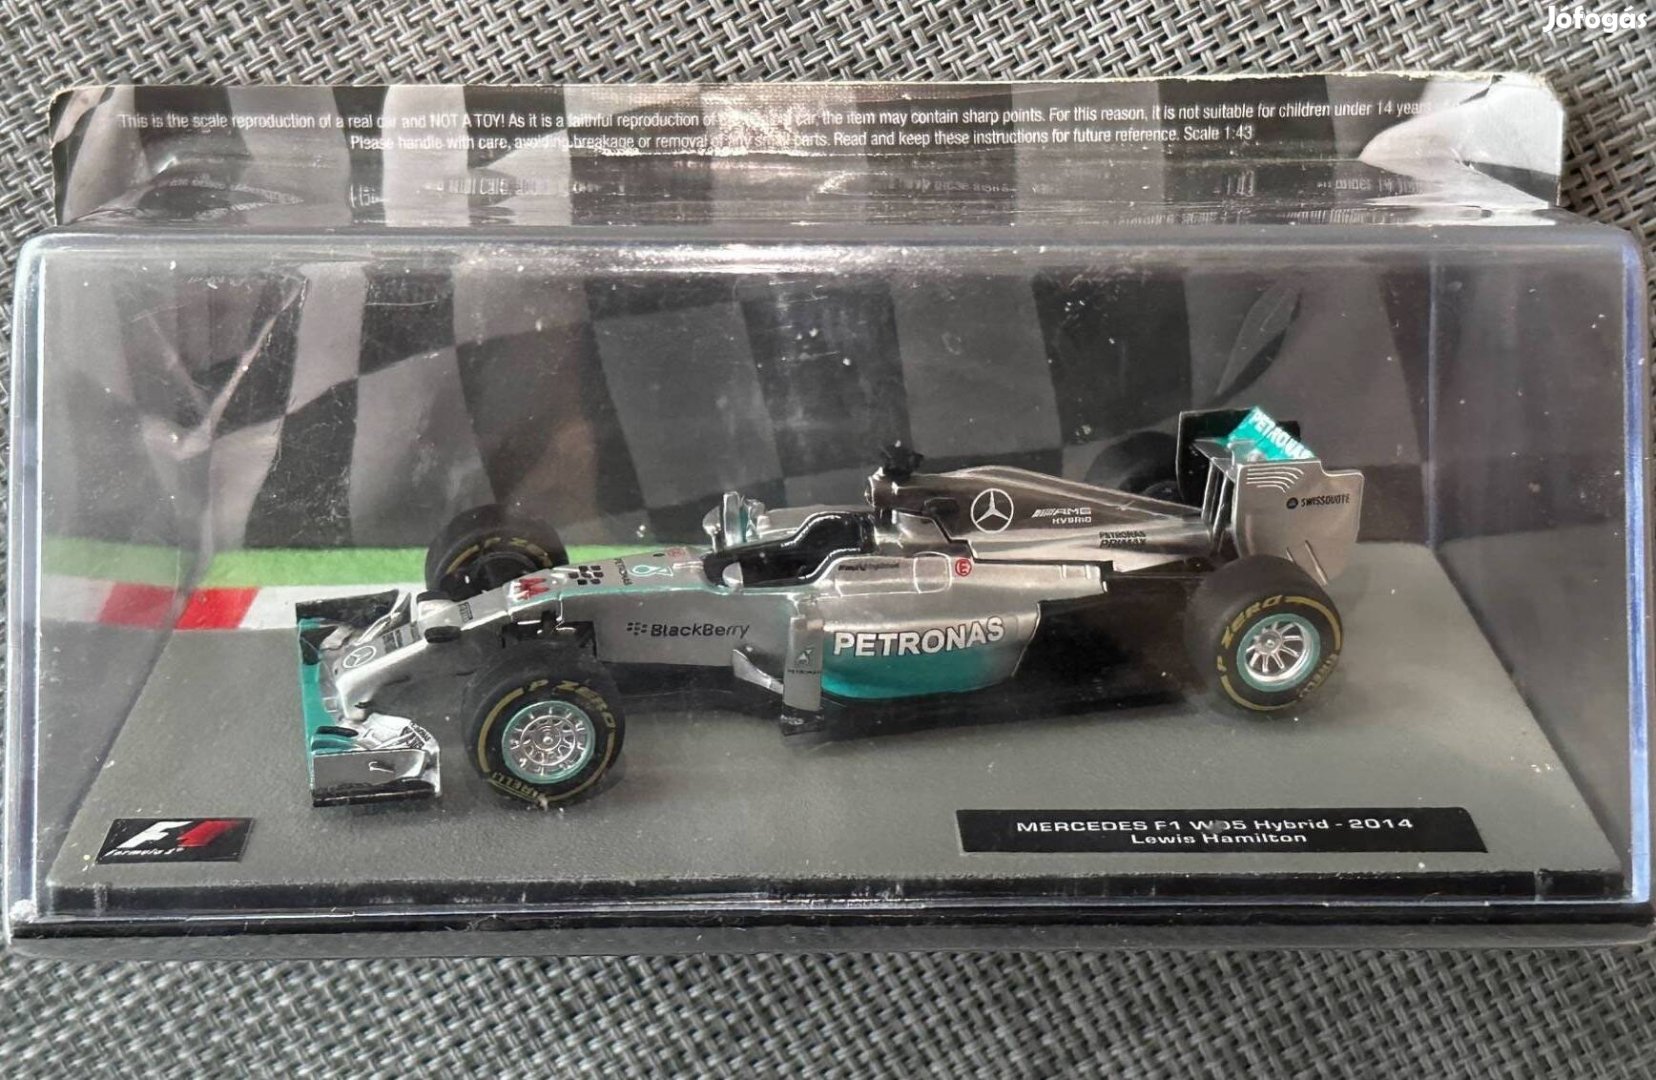 Mercedes F1 W05 Hybrid -2014 Lewis Hamilton #44 modell autó 1:43